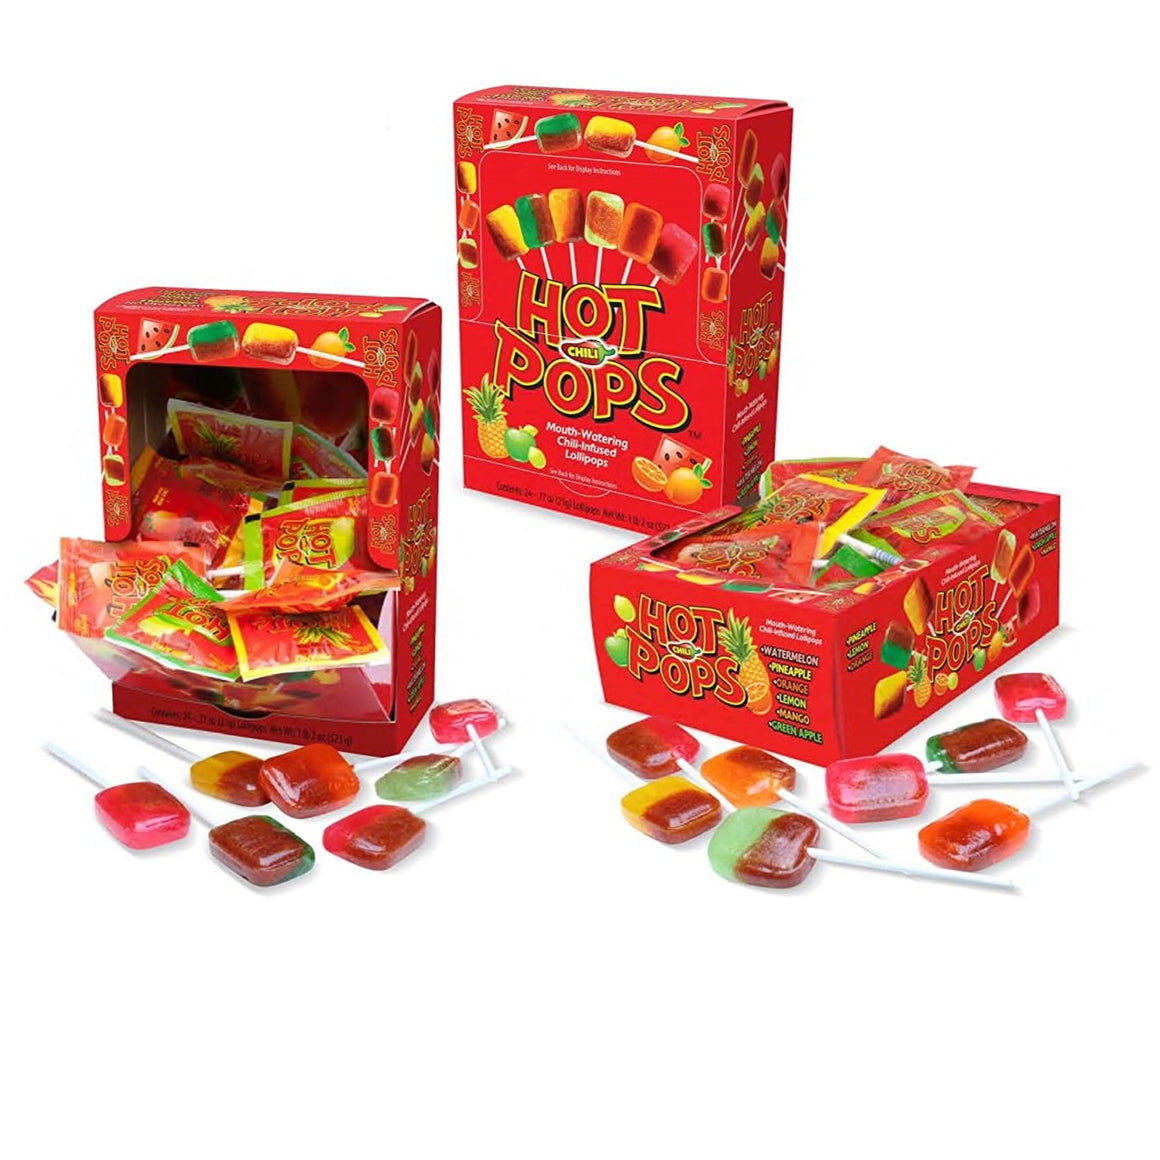 Charms Assorted Fruit Flavor Blow Pop Lollipops - 3 LB Bulk Bag